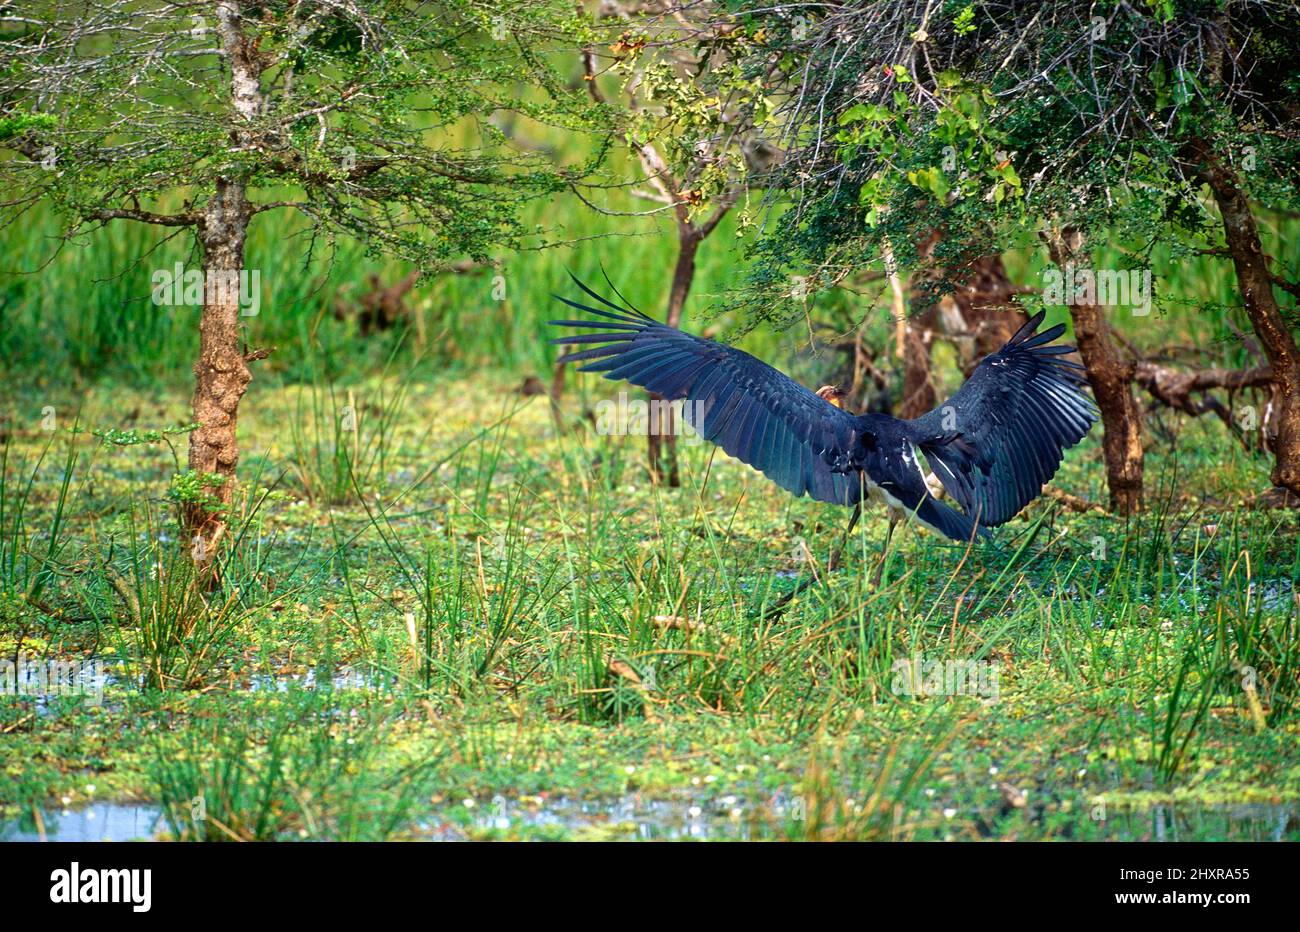 Kleiner Adjutant, Leptoptilos javanicus, Ciconiidae, landend, Vogel, Tier, Yala Nationalpark, Sri Lanka Stock Photo